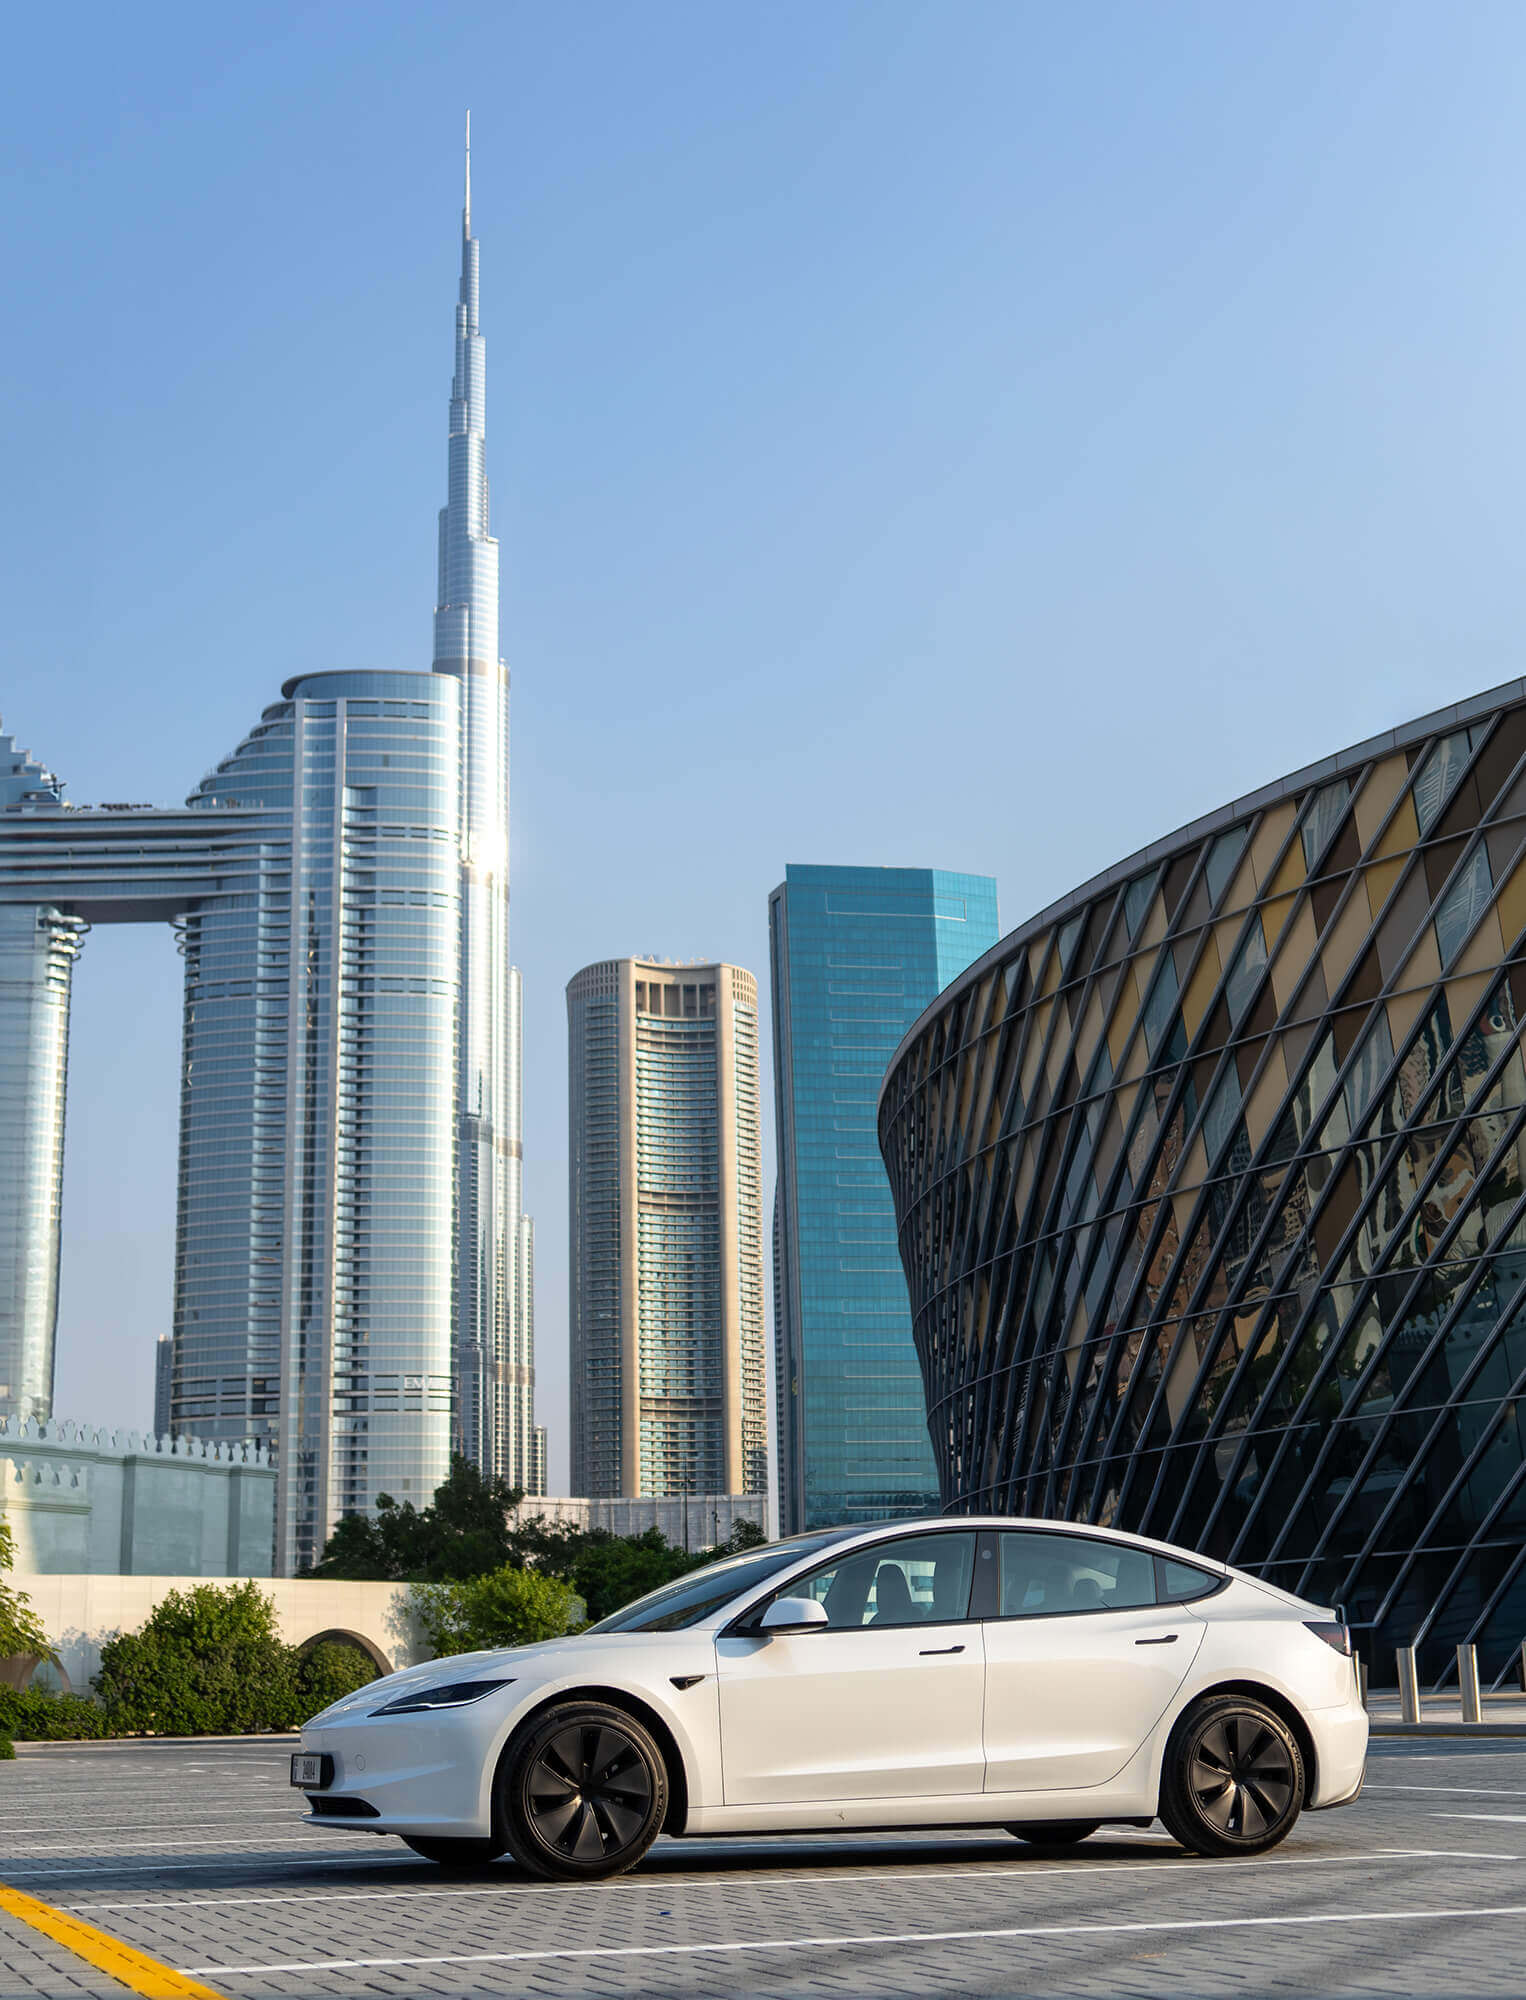 Alugar Tesla Modelo X no Dubai